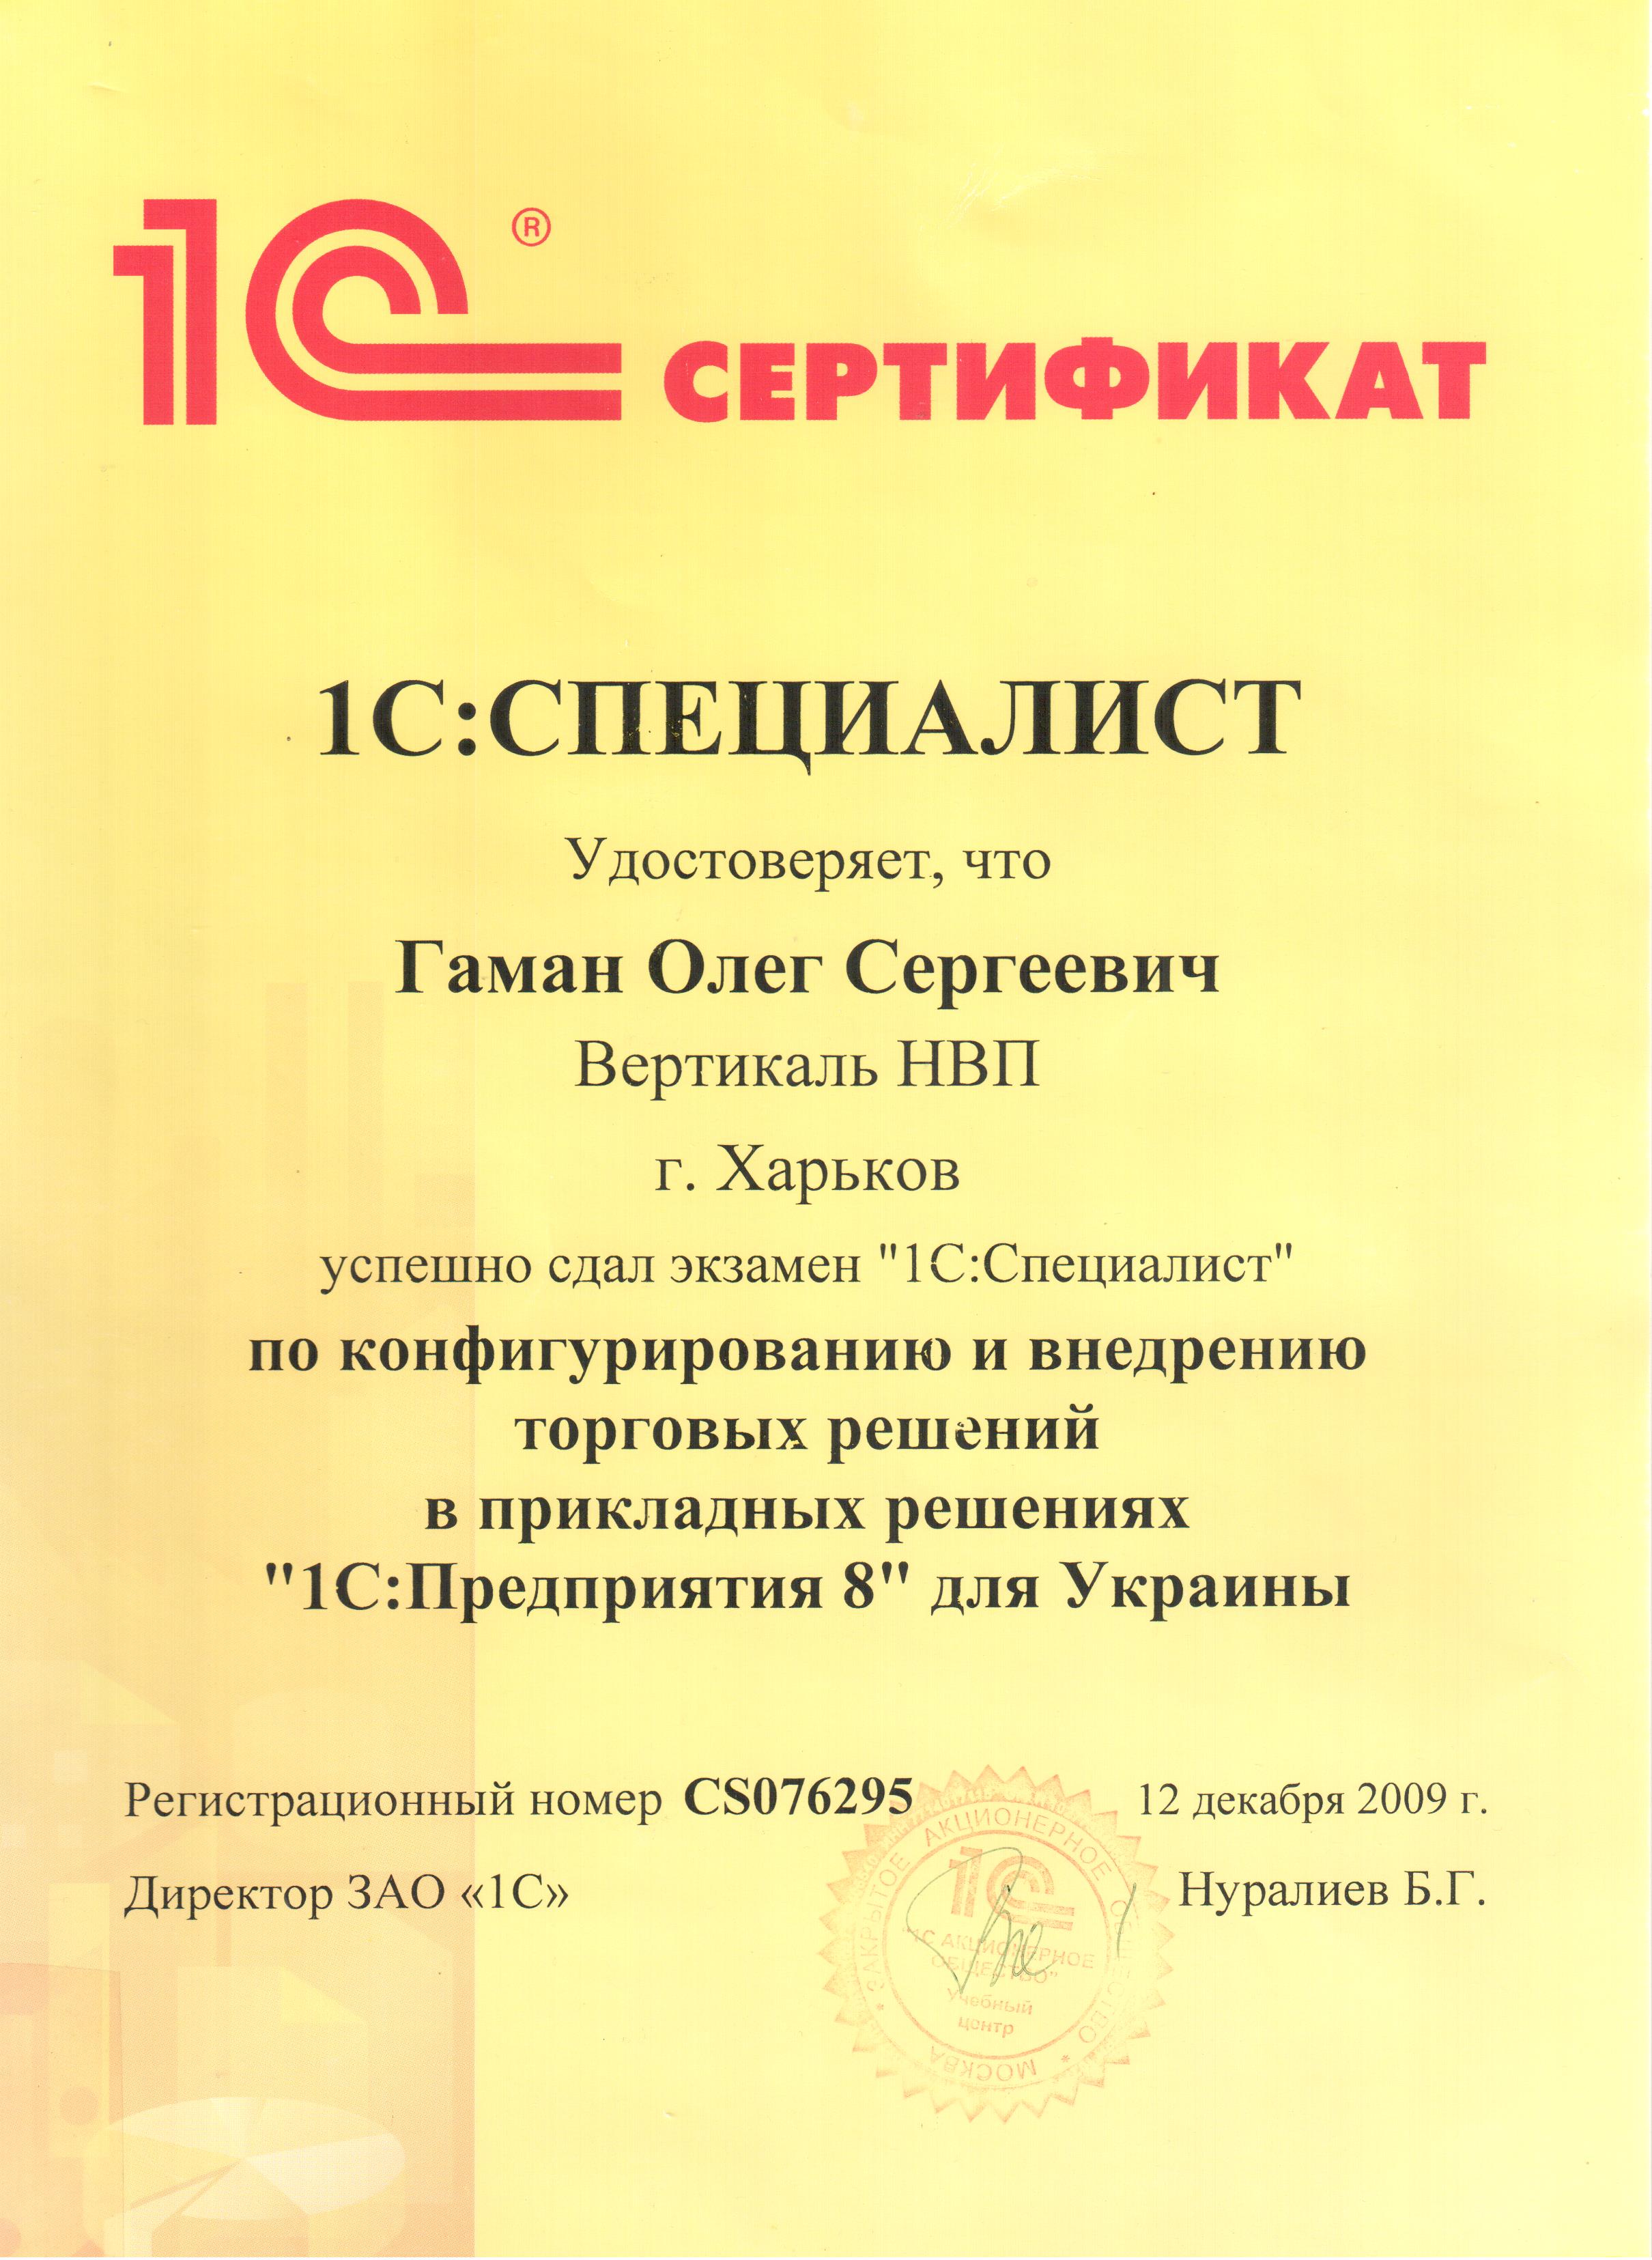 Сертификат 1С:Специалист (Торговые решения)